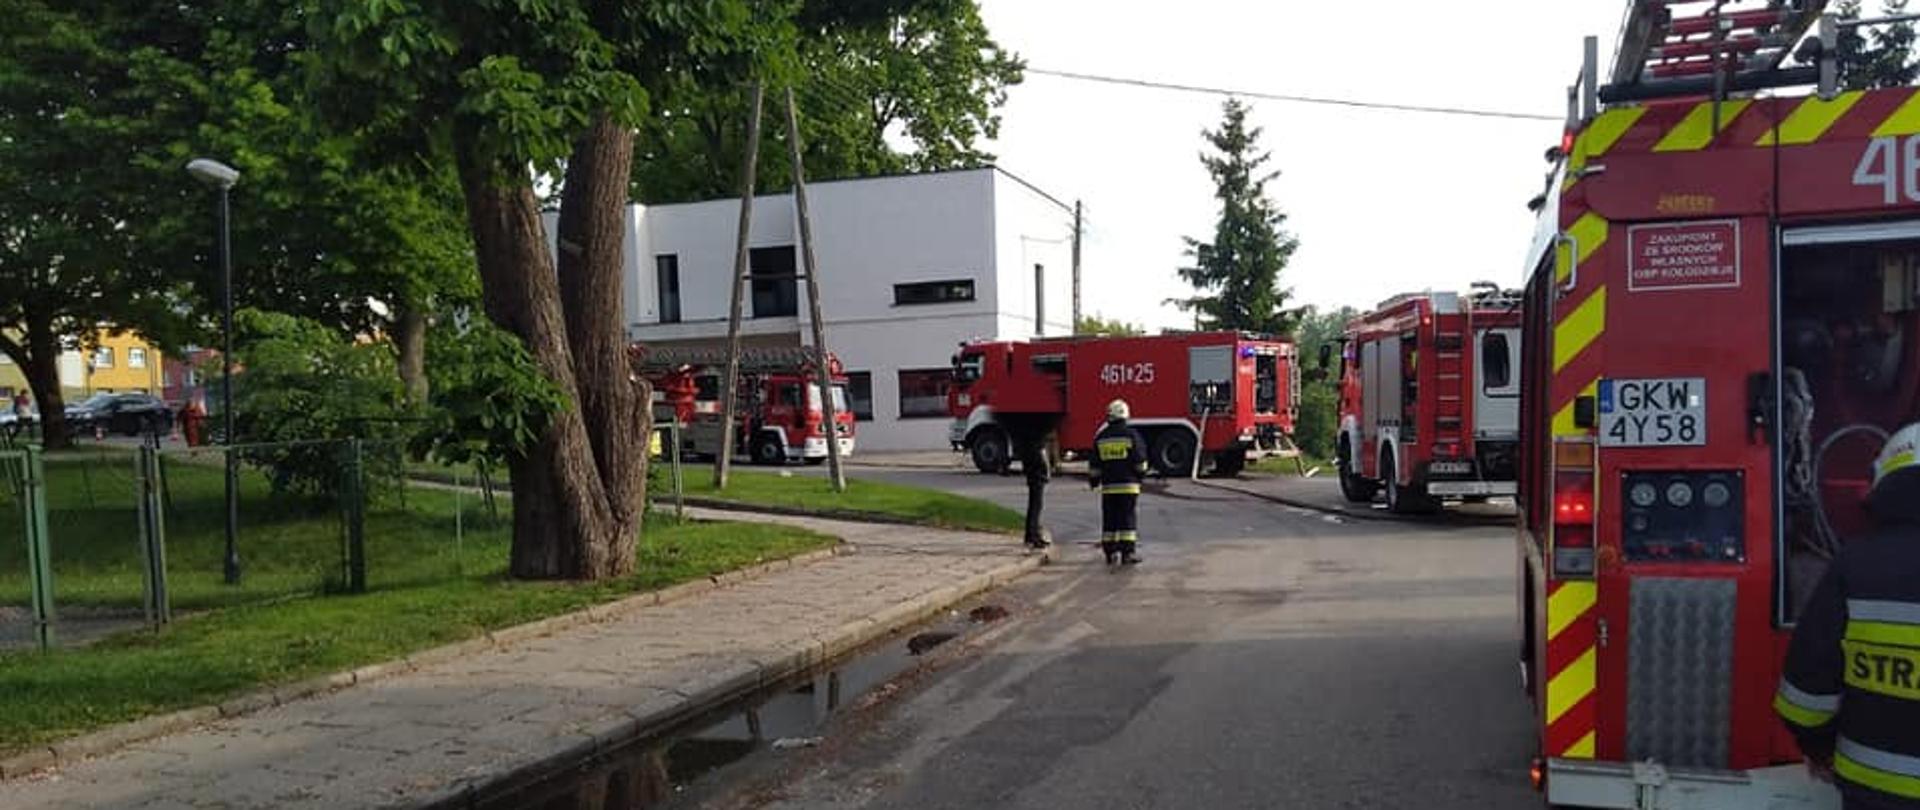 Pojazdy ratownicze stoją przy budynku, w którym rozwijał się pożar